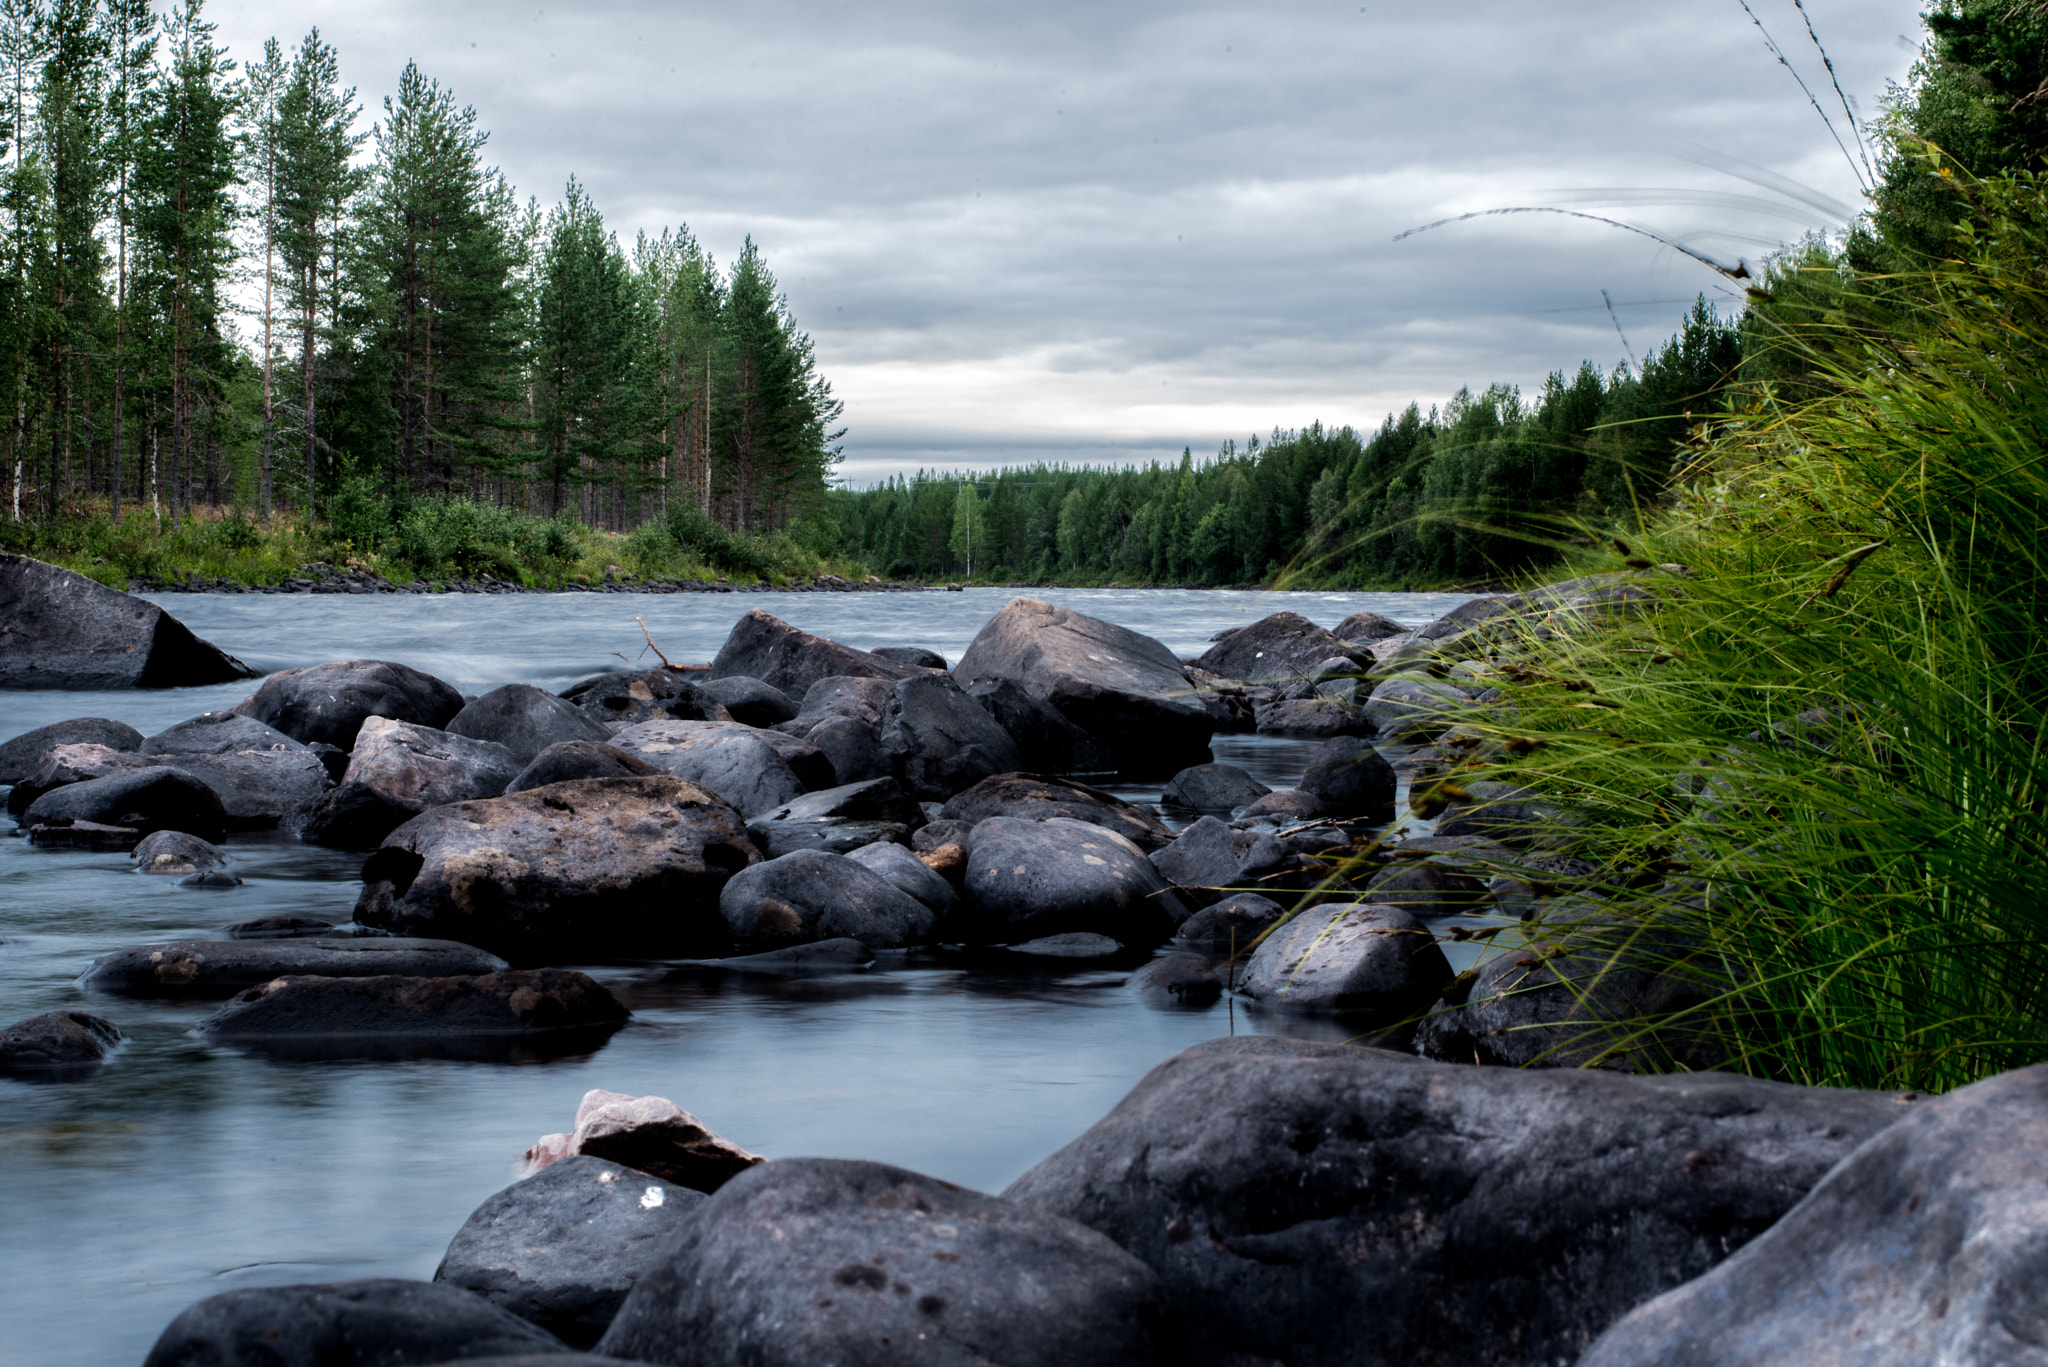 AF Zoom-Nikkor 35-70mm f/3.3-4.5 N sample photo. Sweden dreams - the river photography